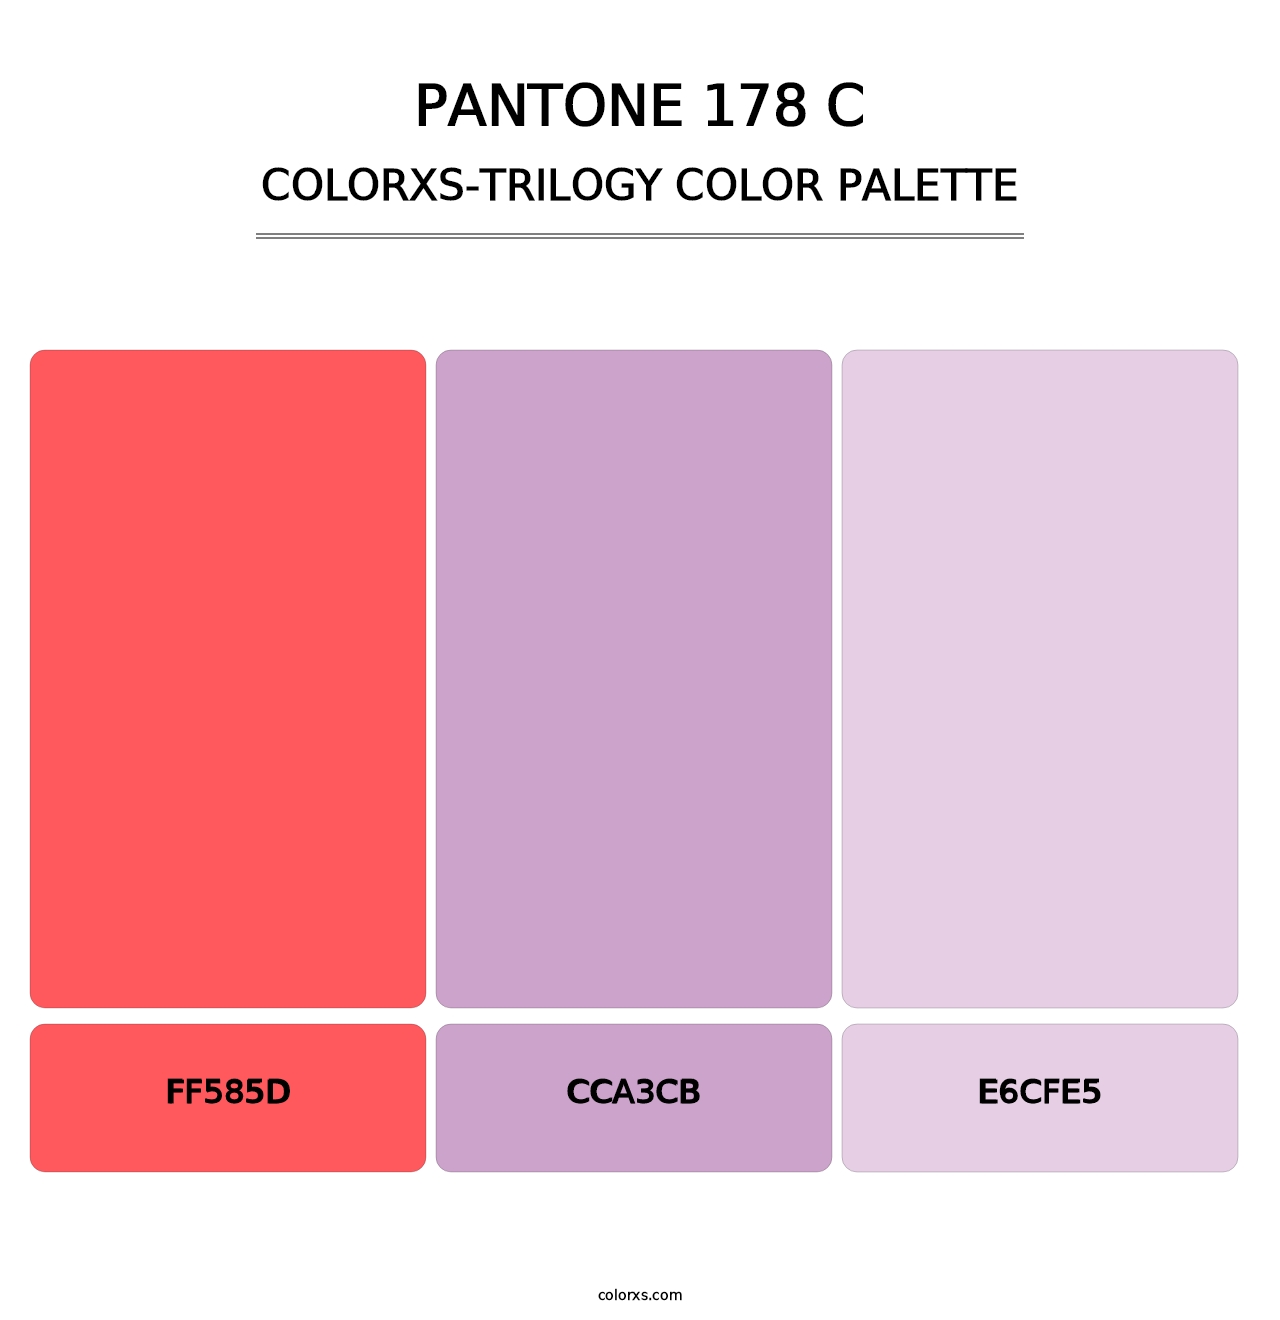 PANTONE 178 C - Colorxs Trilogy Palette